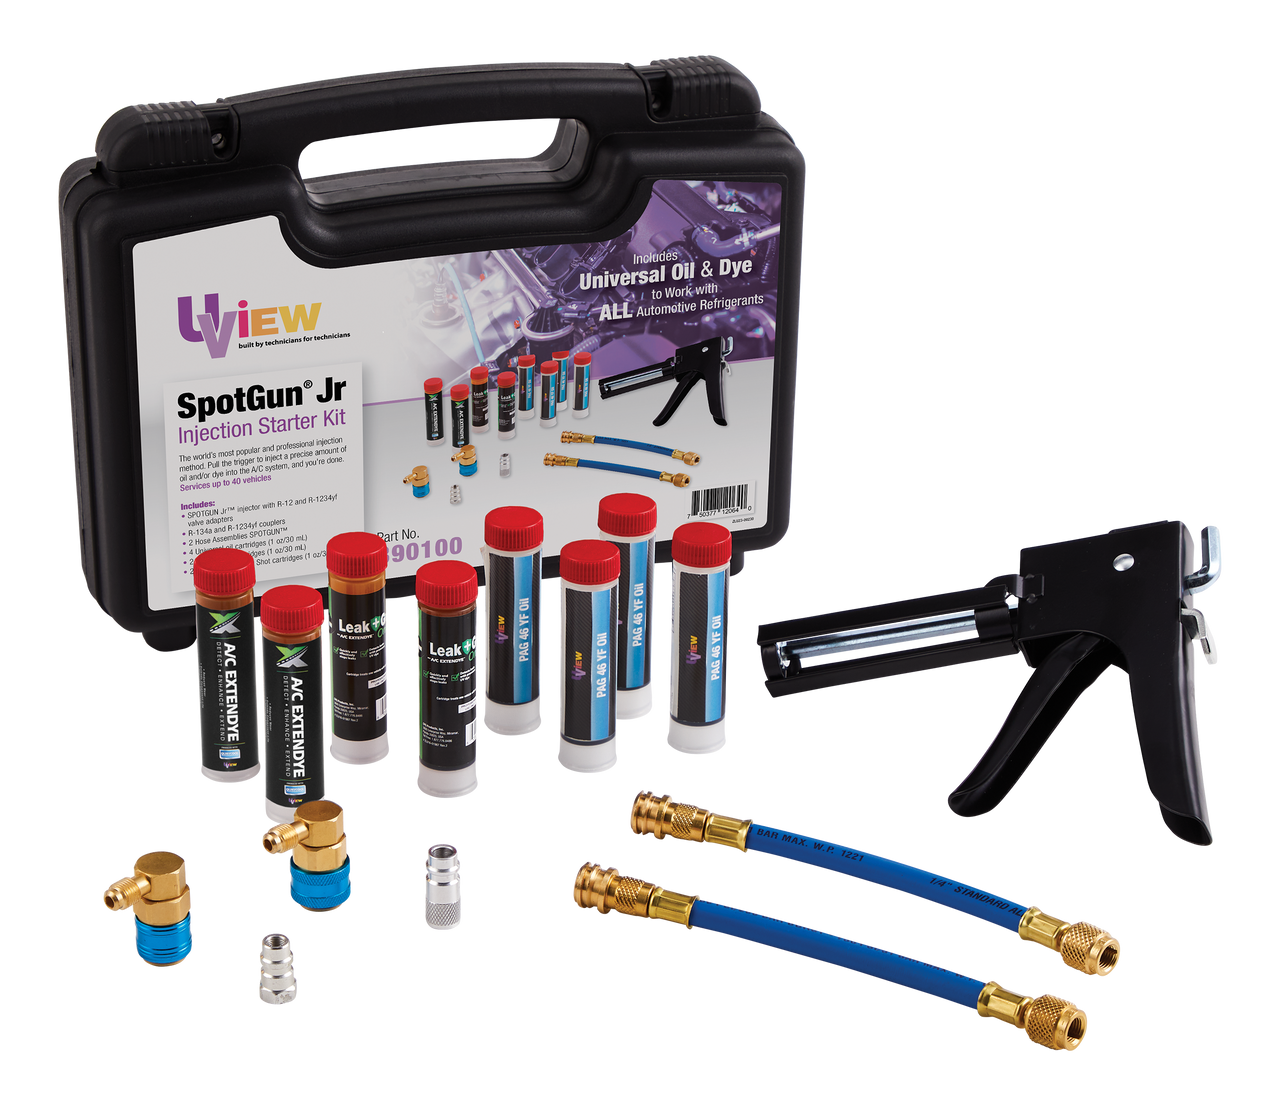 UView® SpotGun® Jr Injection Starter Kit 390100